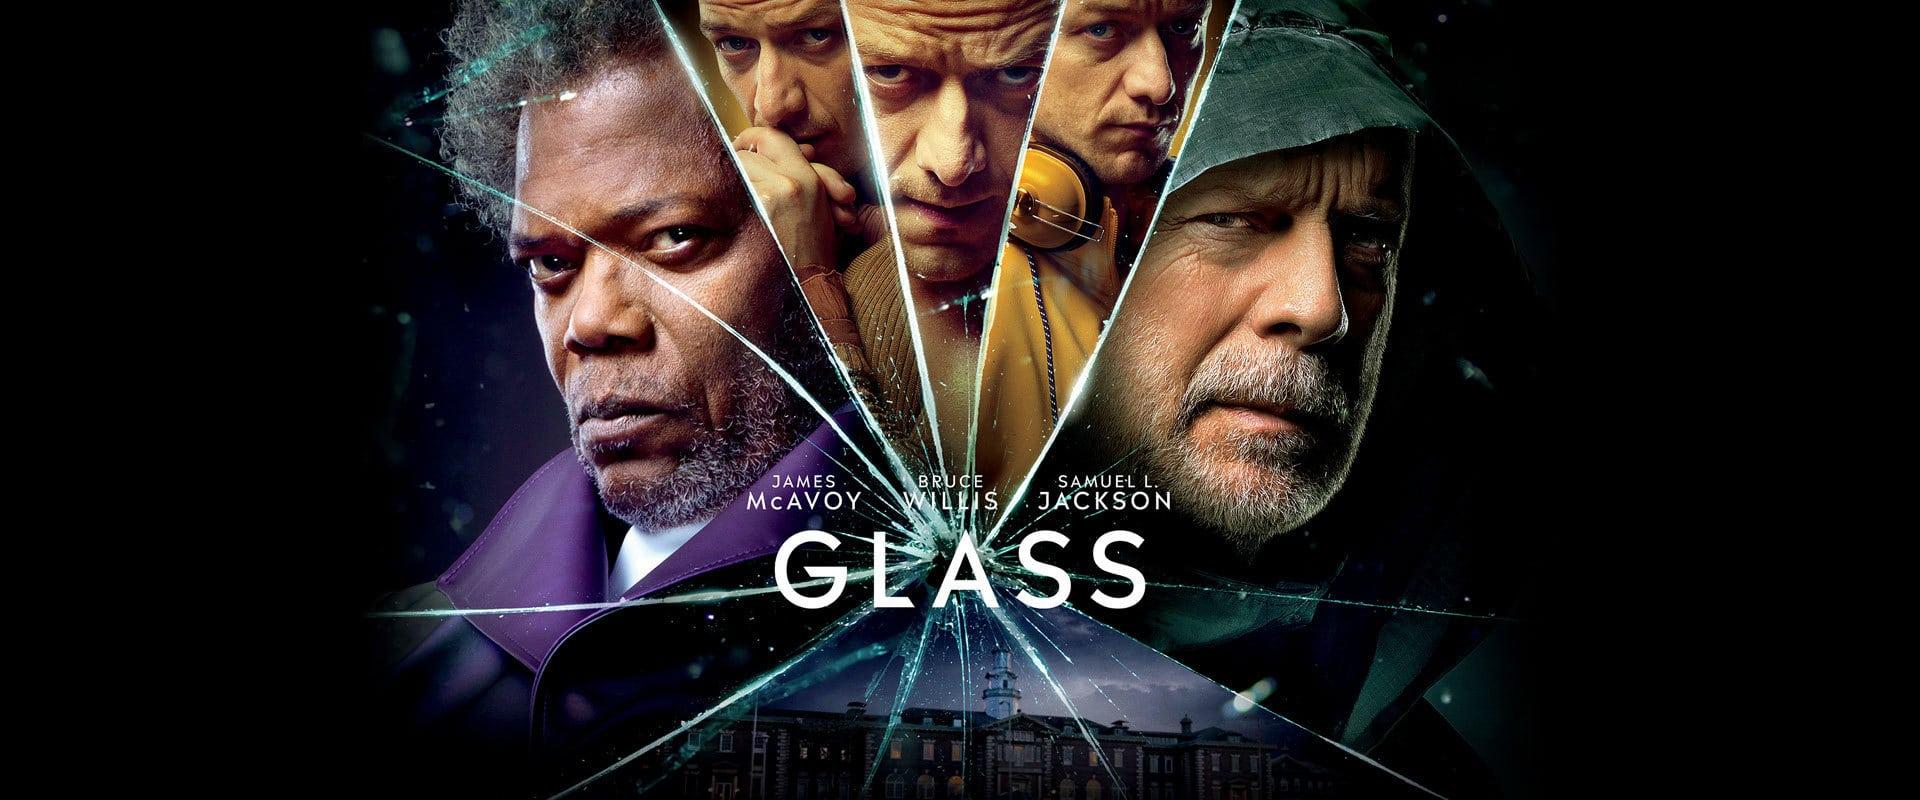 بوستر فيلم Glass